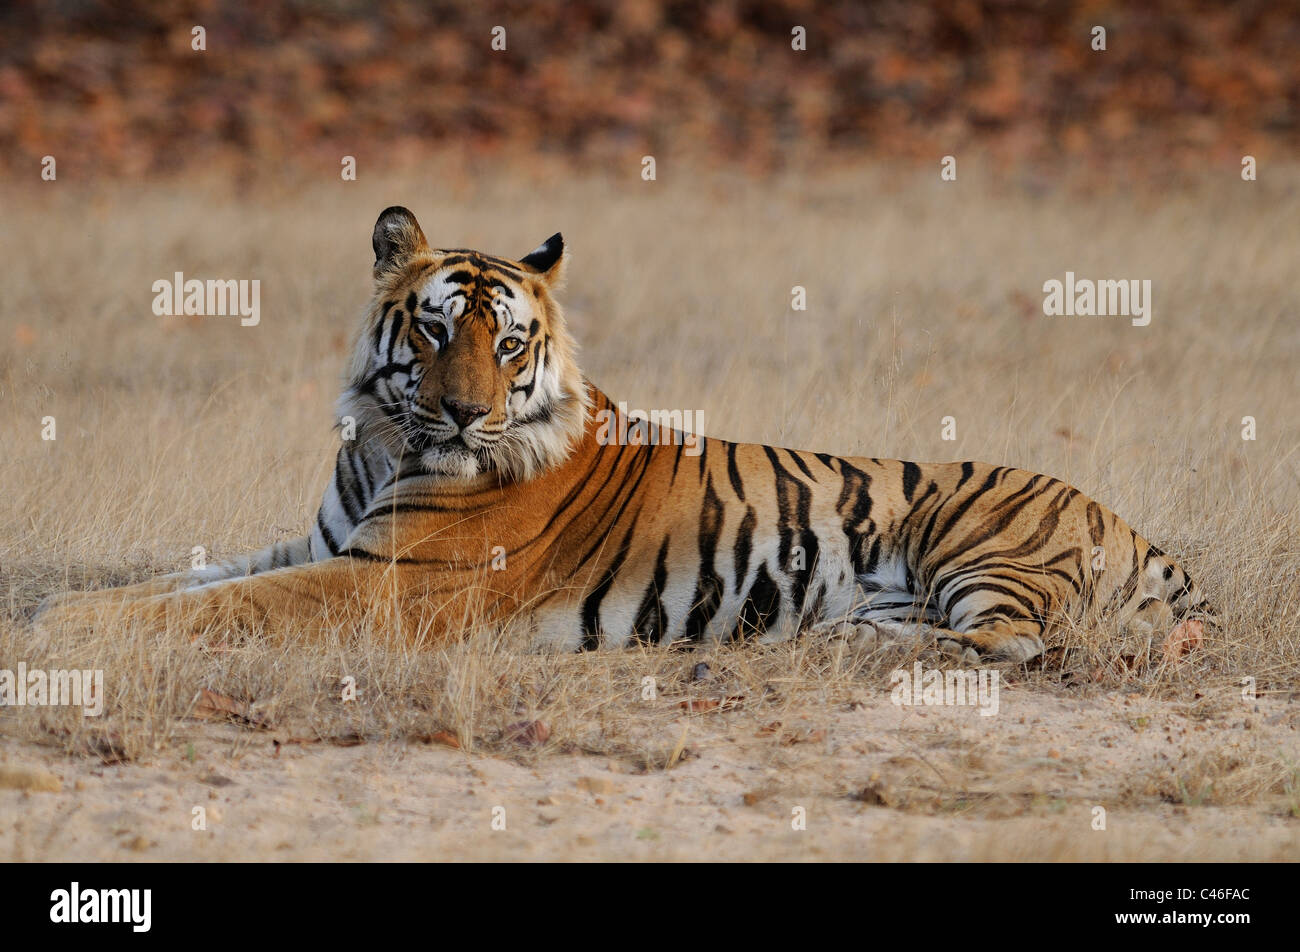 Residenziale dominante maschio adulto tigre del Bengala in seduta una prateria aperta in mattina presto luce in Bandhavgarh, India. Foto Stock